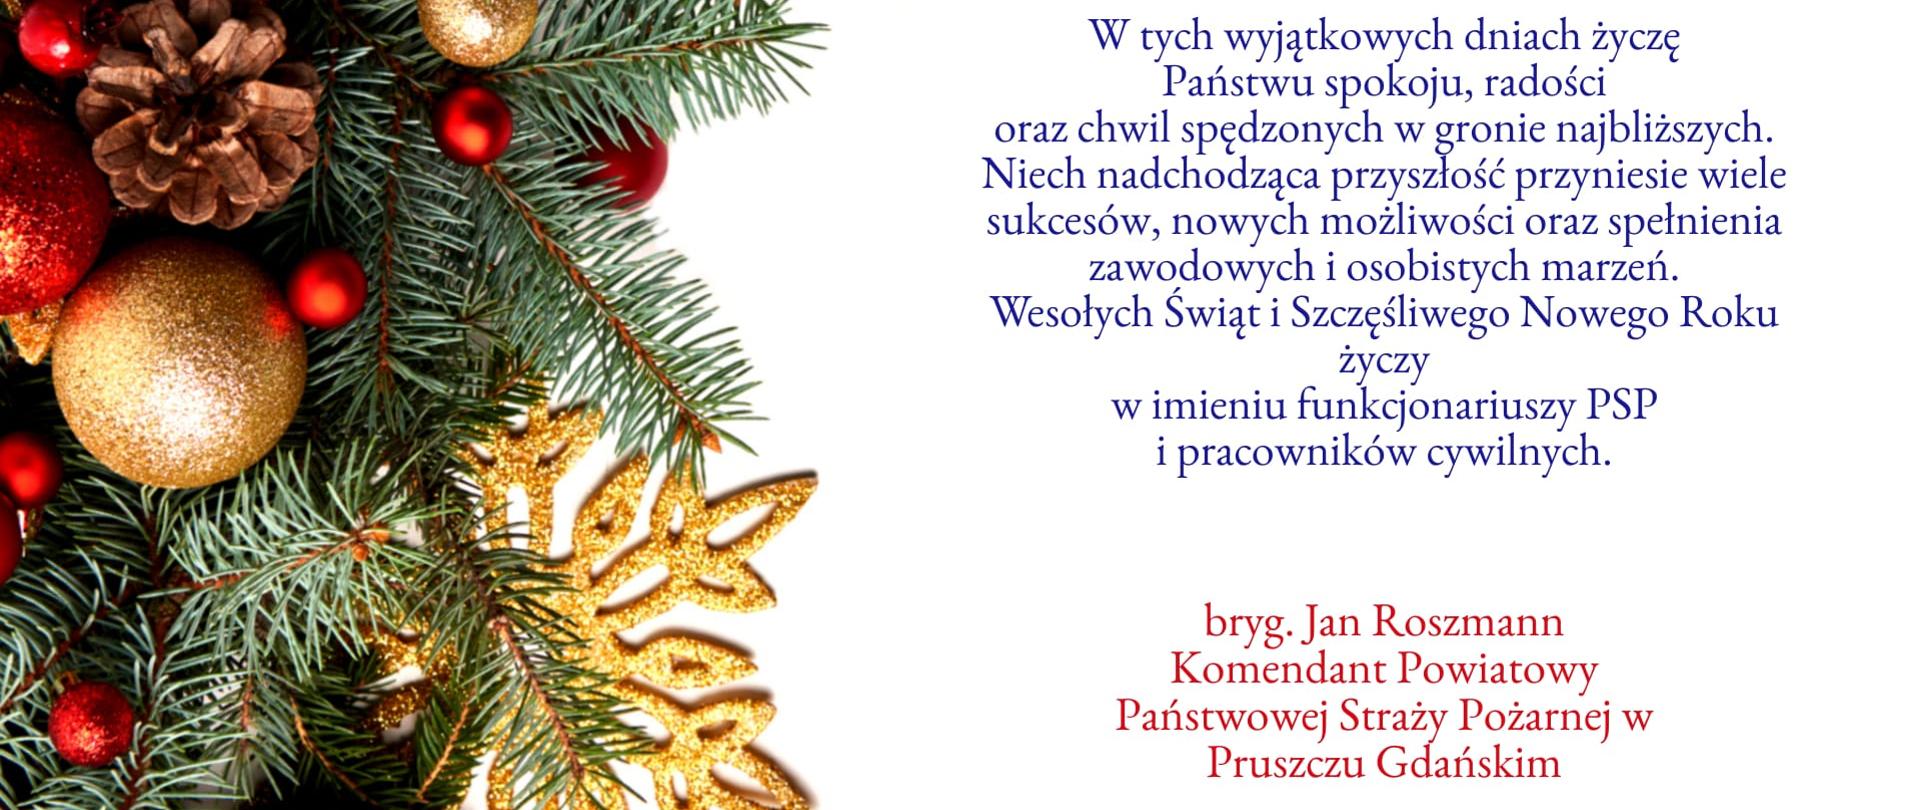 Życzenia Komendanta Powiatowego PSP w Pruszczu Gdańskim na Boże Narodzenie oraz Nowy Rok